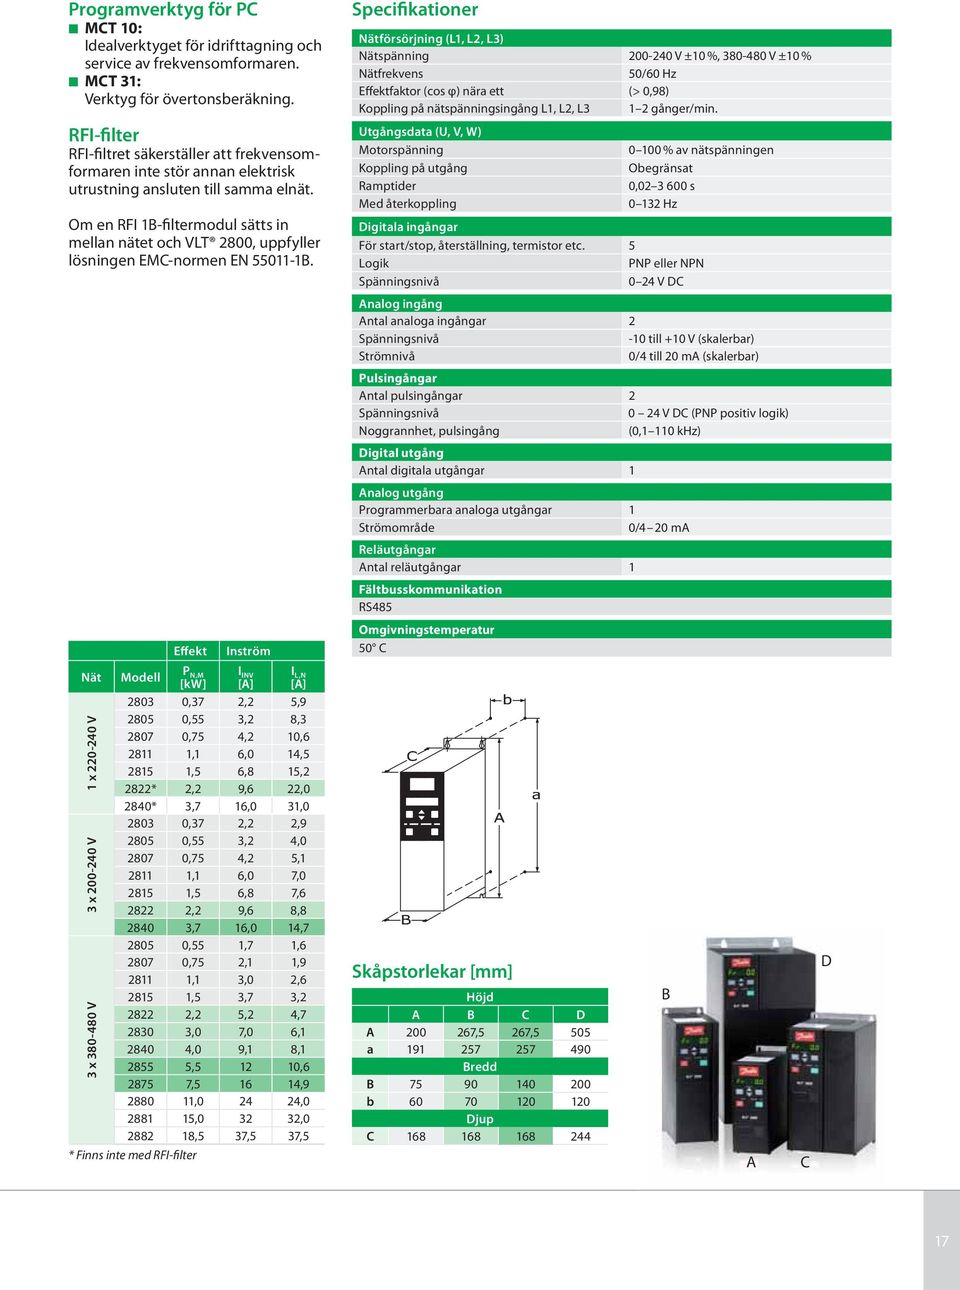 Om en RFI 1B-filtermodul sätts in mellan nätet och VLT 2800, uppfyller lösningen EMC-normen EN 55011-1B.